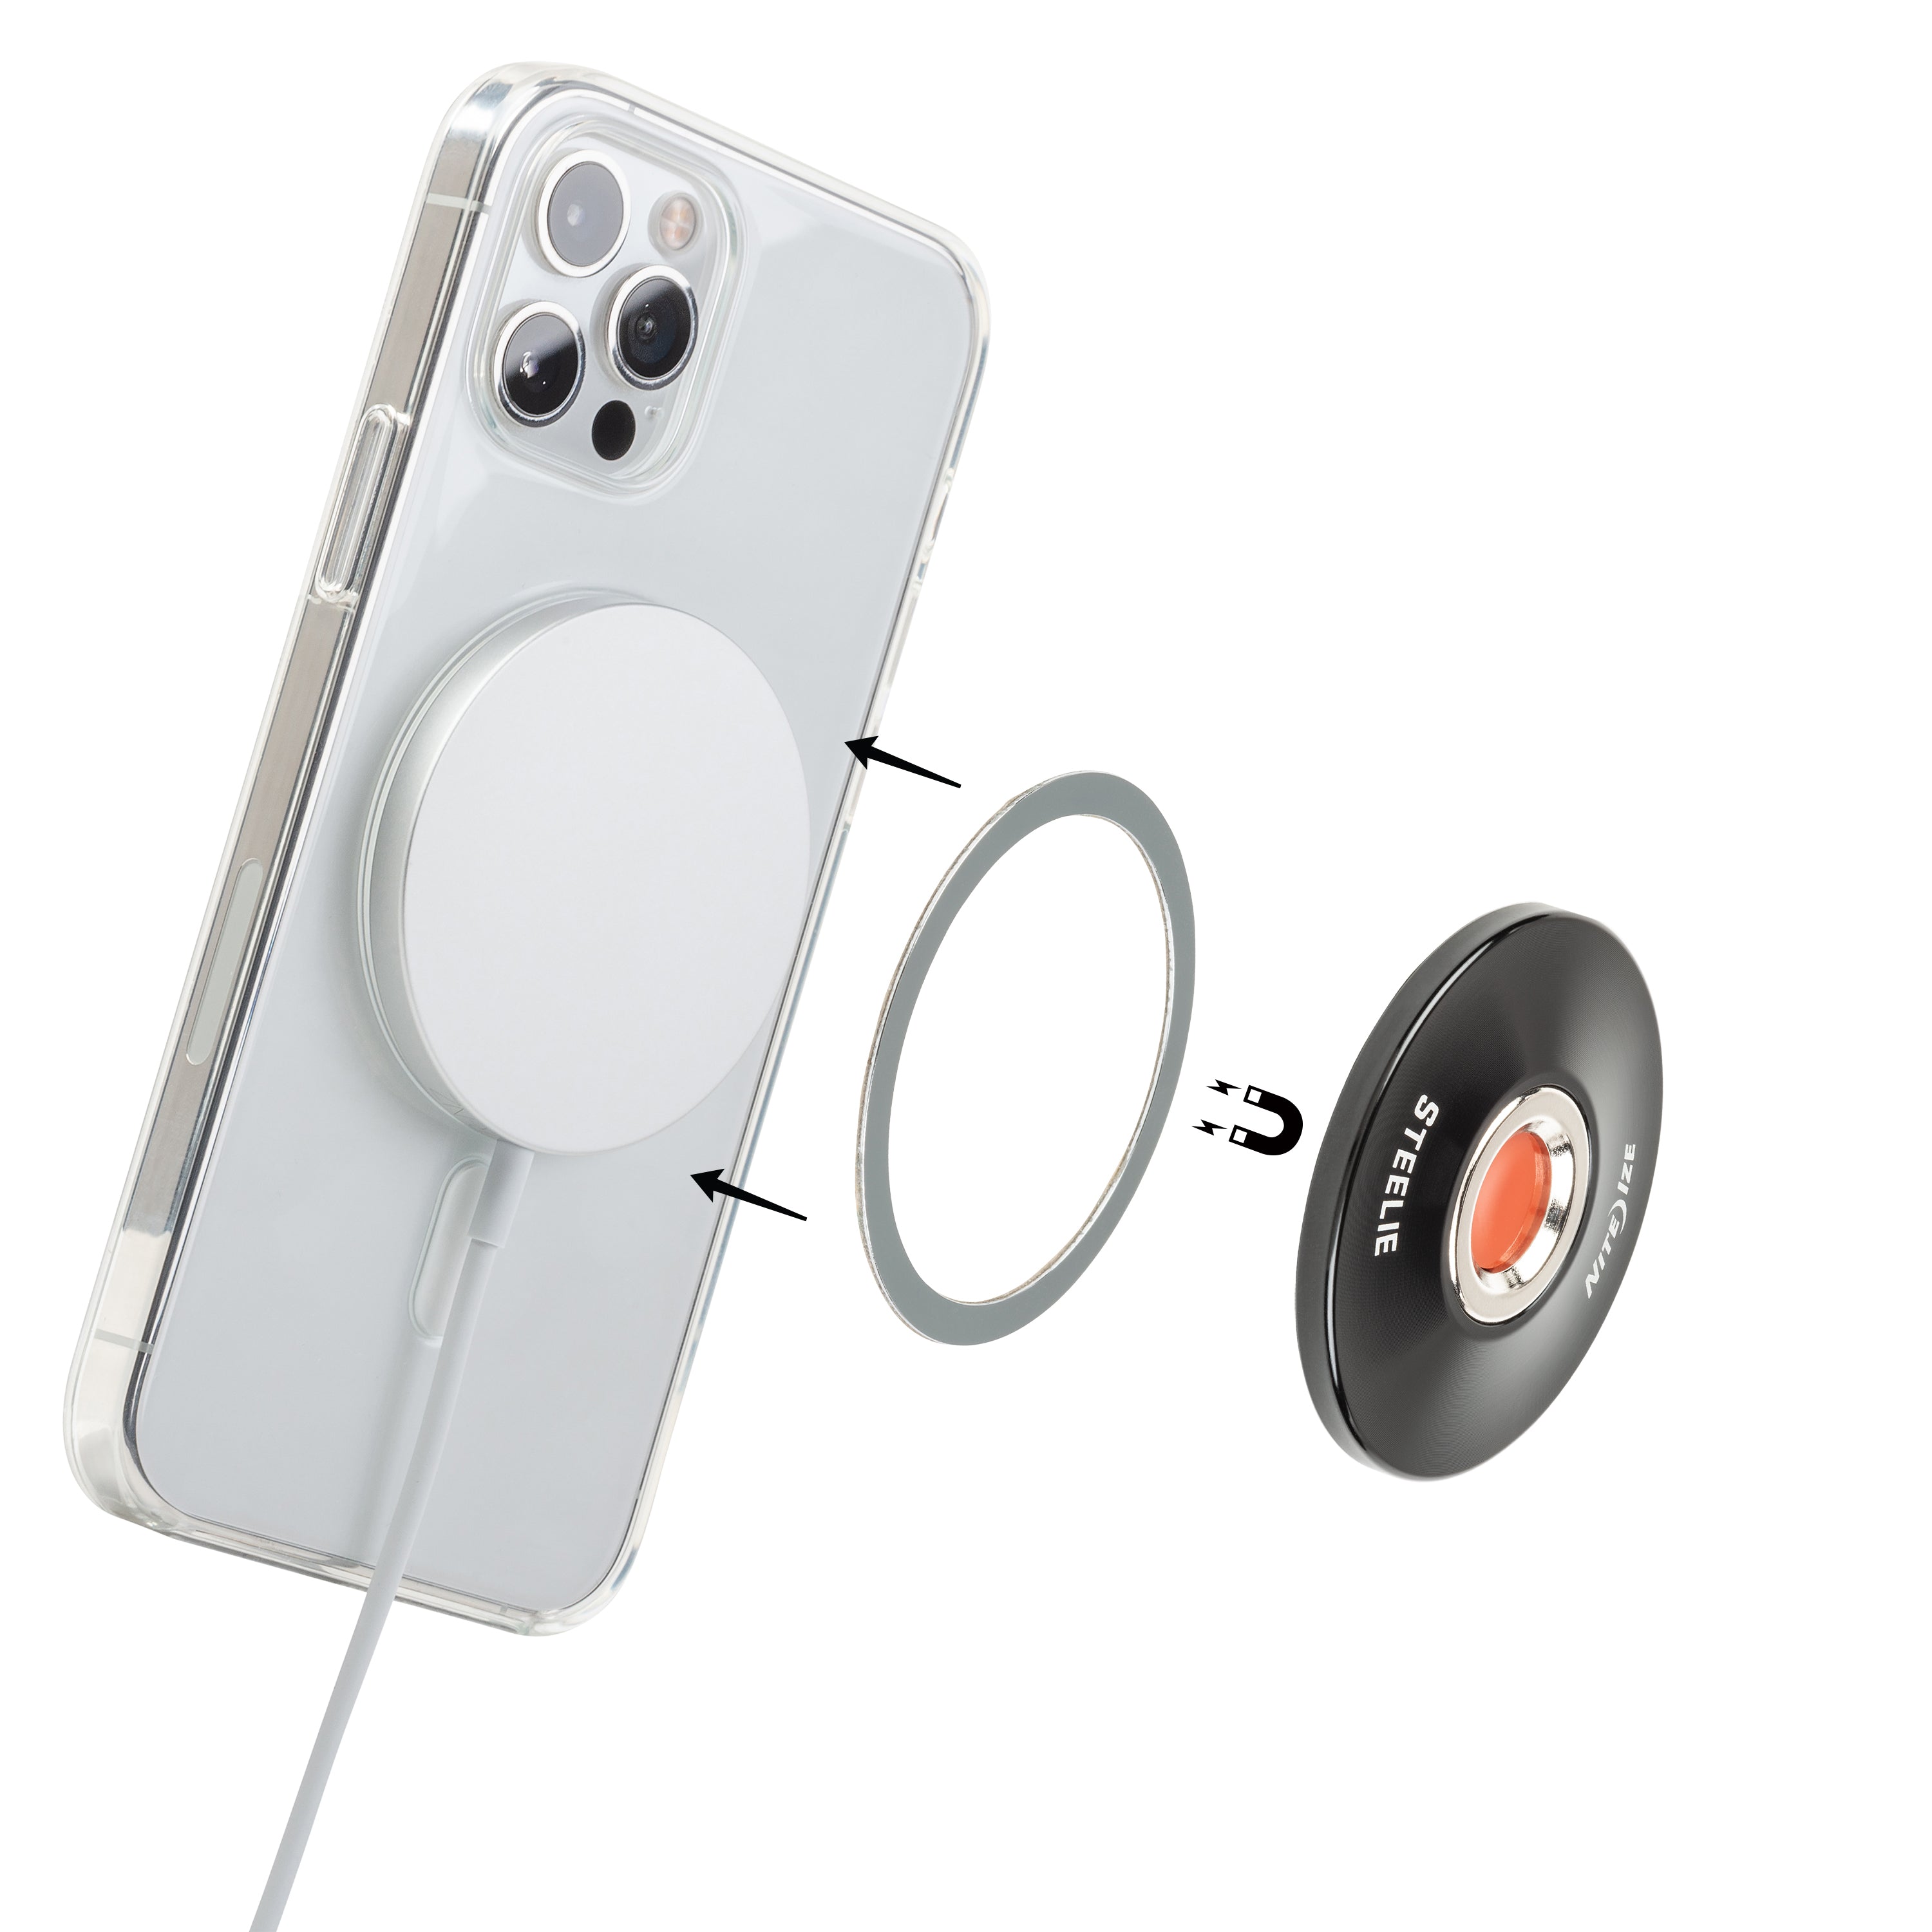 Steelie® Orbiter® Plus Magnetic Socket + Metal Ring